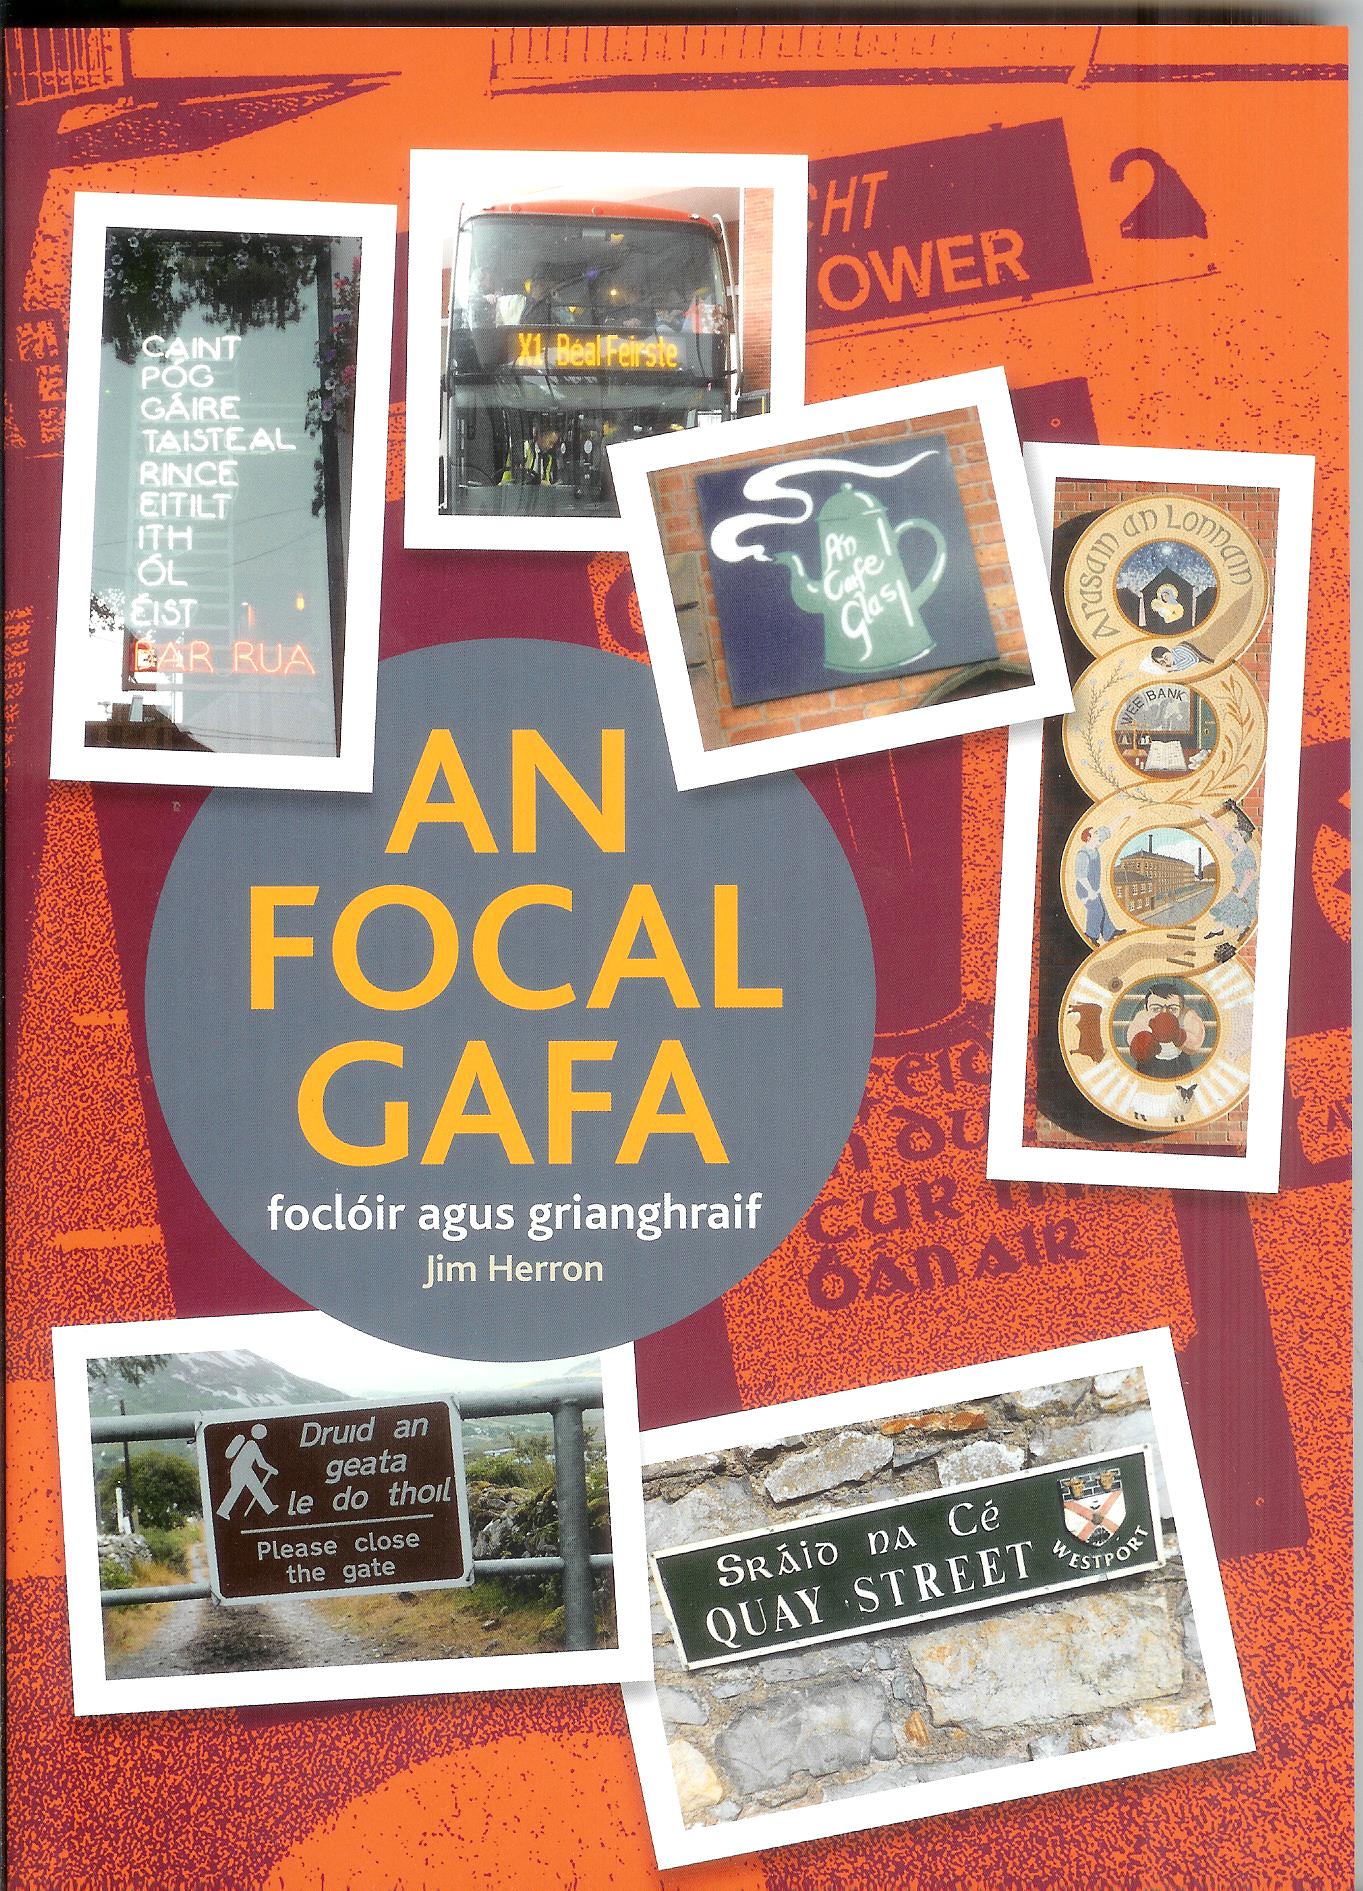 An Focal Gafa - Foclóir agus Grianghraif by Jim Herron